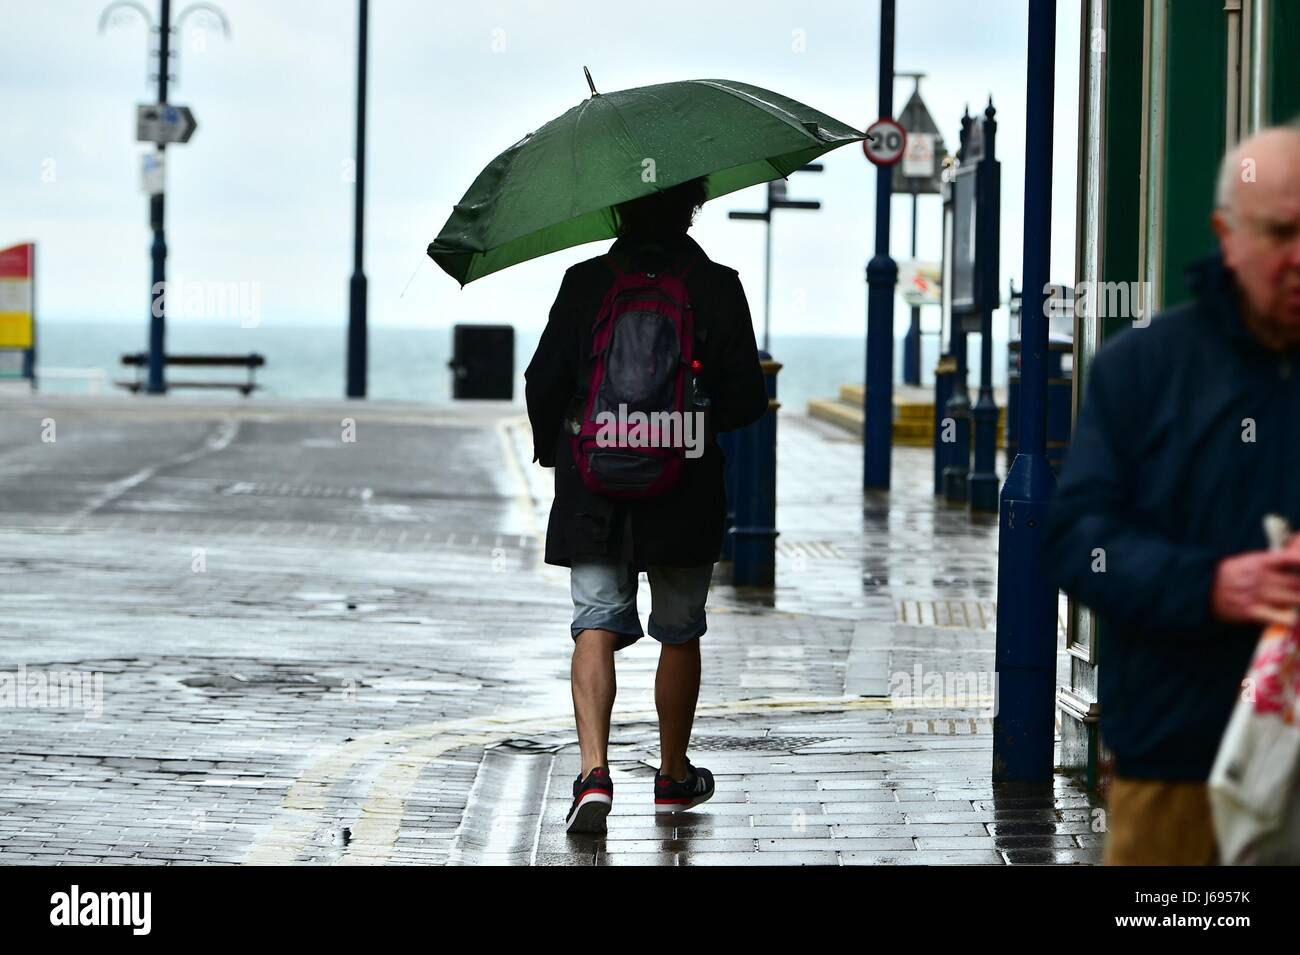 Aberystwyth Wales Uk, Samstag, 20. Mai 2017 UK Wetter: Dunkle Wolken und Regenschauer dominieren den Tag Aberystwyth an der Cardigan Bay Küste, West Wales Photo Credit: Keith Morris/Alamy Live-Nachrichten Stockfoto